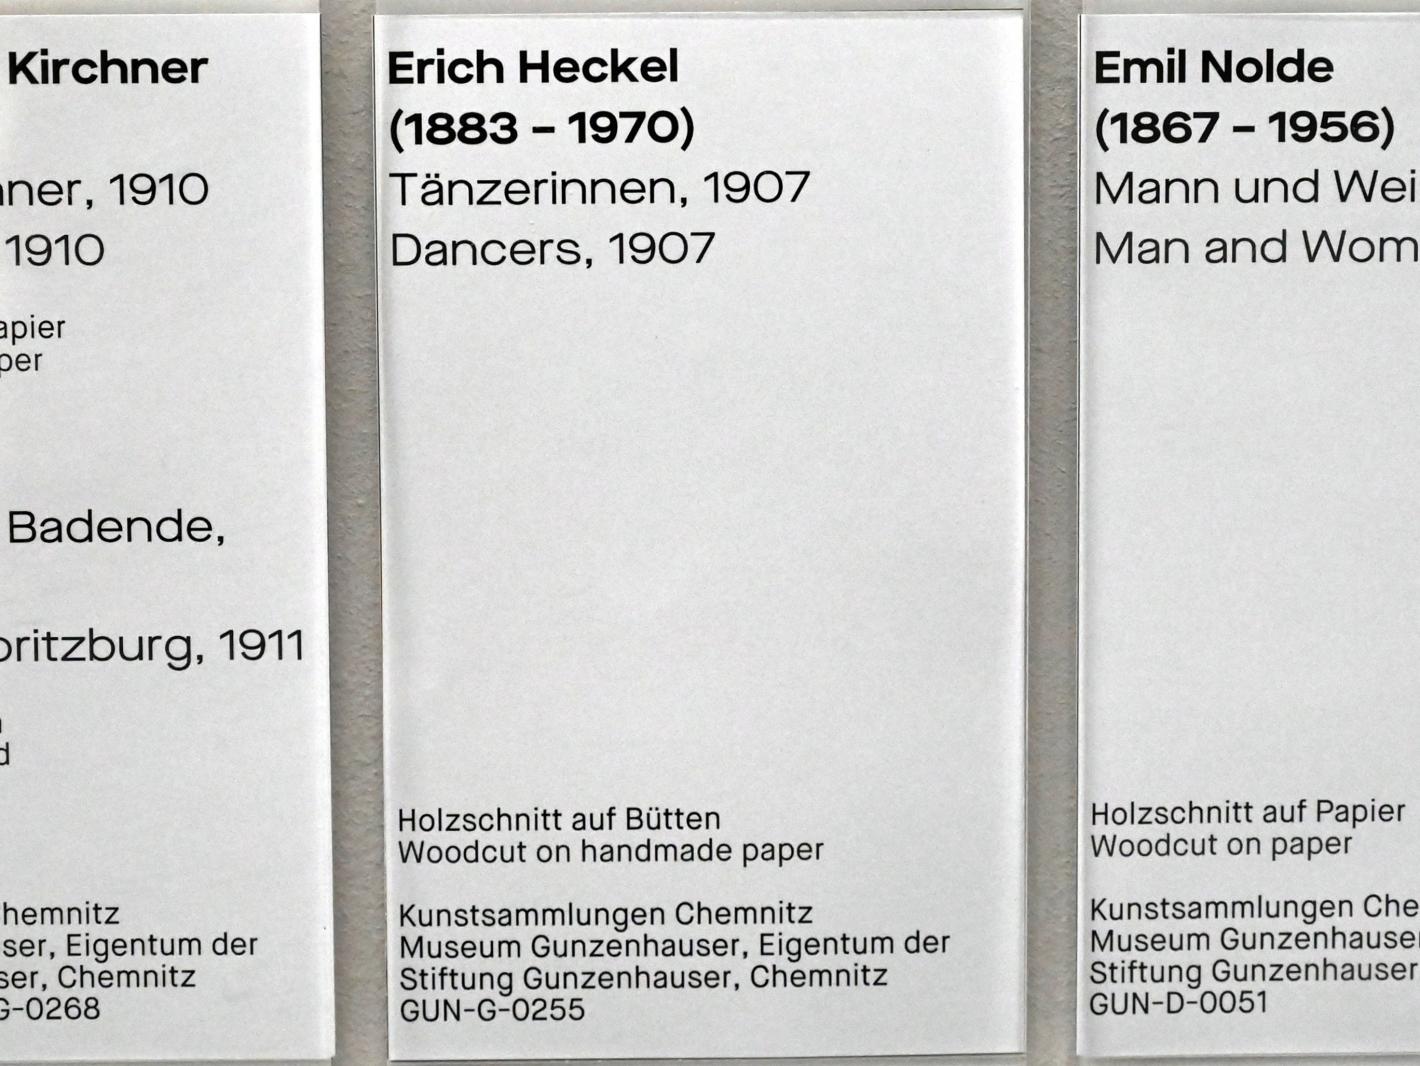 Erich Heckel (1906–1958), Tänzerinnen, Chemnitz, Museum Gunzenhauser, Saal 3.7 - Die Brücke, 1907, Bild 3/3